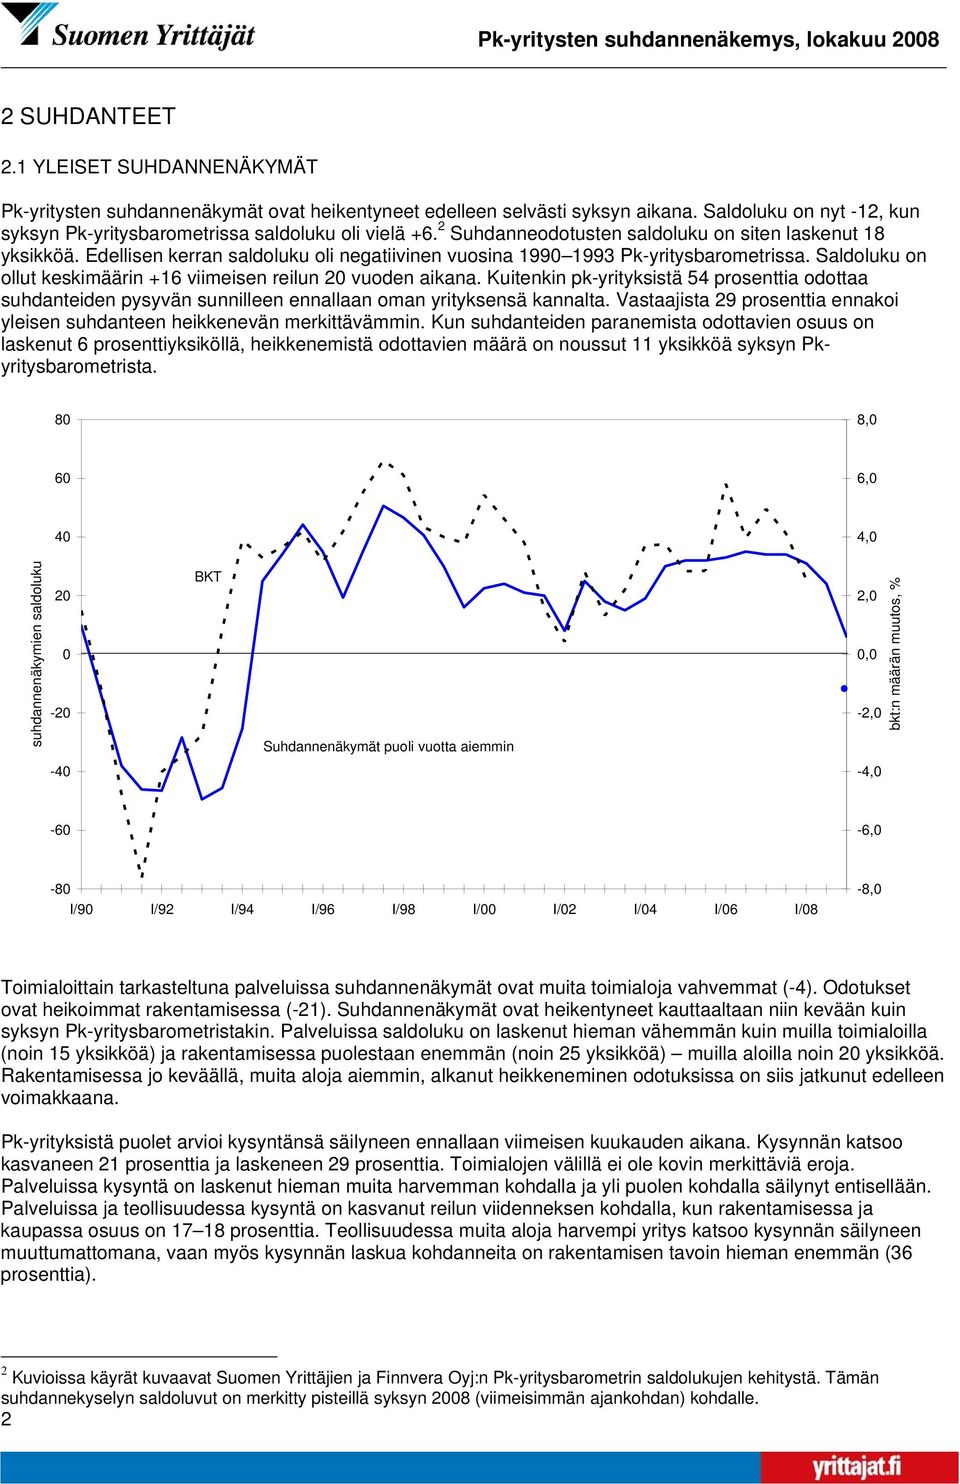 Edellisen kerran saldoluku oli negatiivinen vuosina 199 1993 Pk-yritysbarometrissa. Saldoluku on ollut keskimäärin +16 viimeisen reilun 2 vuoden aikana.